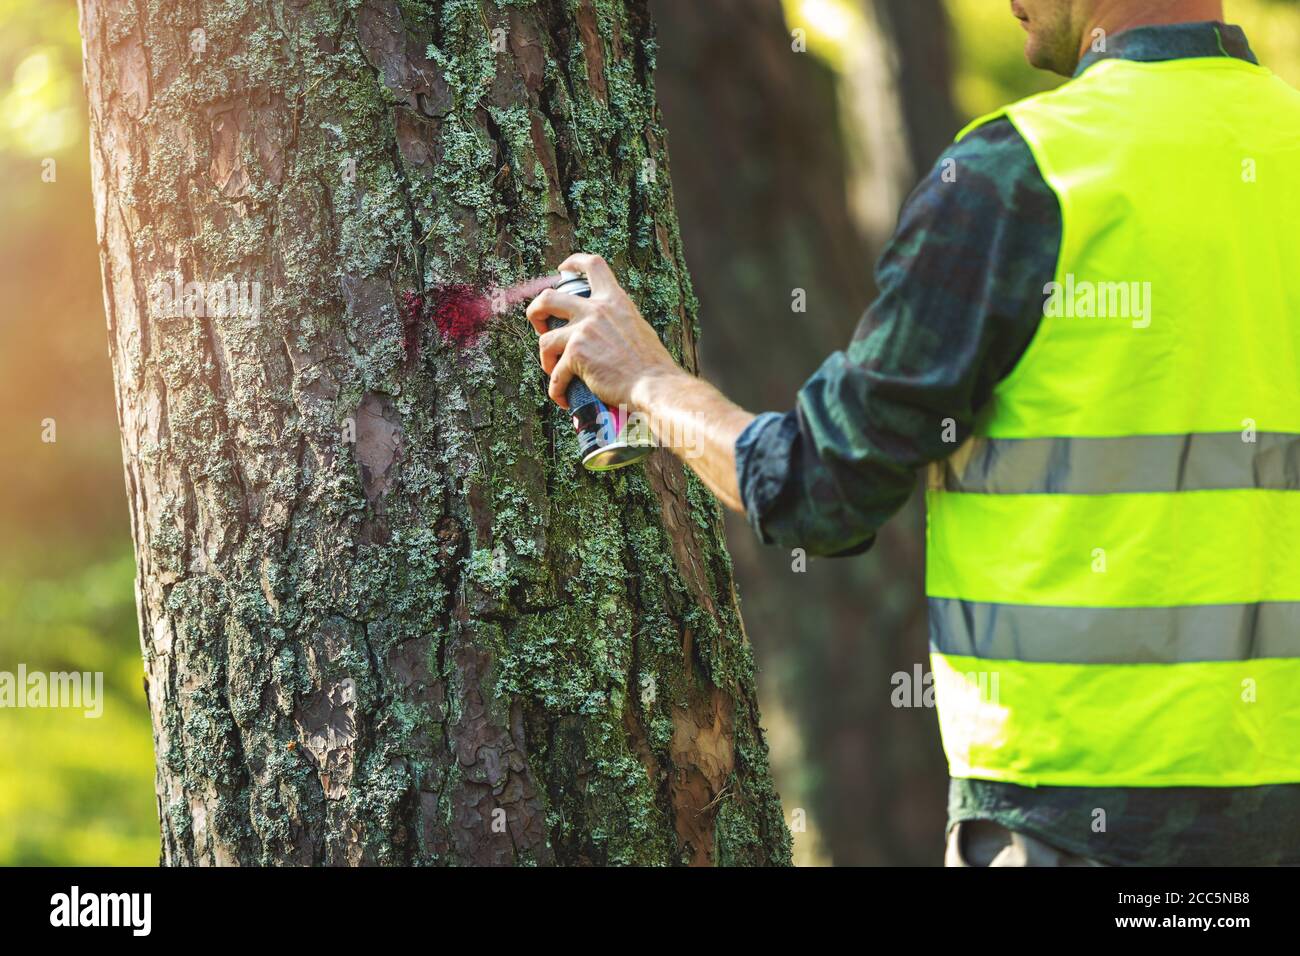 industria di tronchi - ingegnere forestale che contrassegna tronco di albero con rosso spray per il taglio nel processo di deforestazione Foto Stock